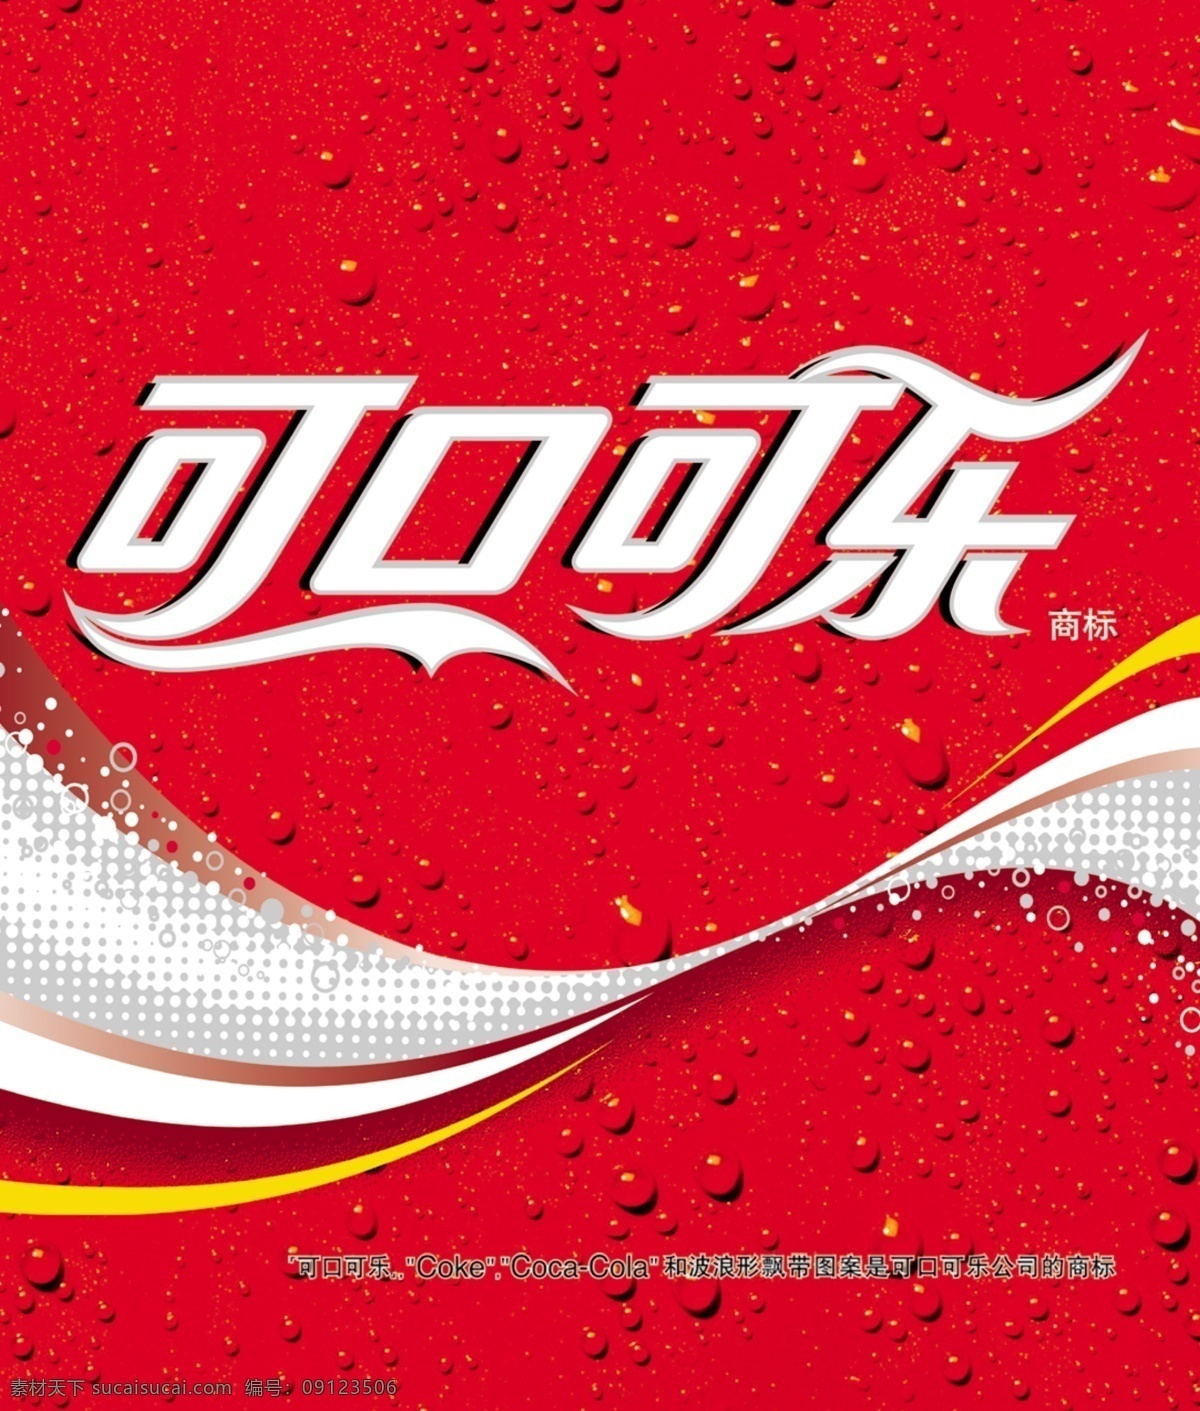 可口可乐 广告 可口可乐素材 可乐广告 可乐素材 psd源文件